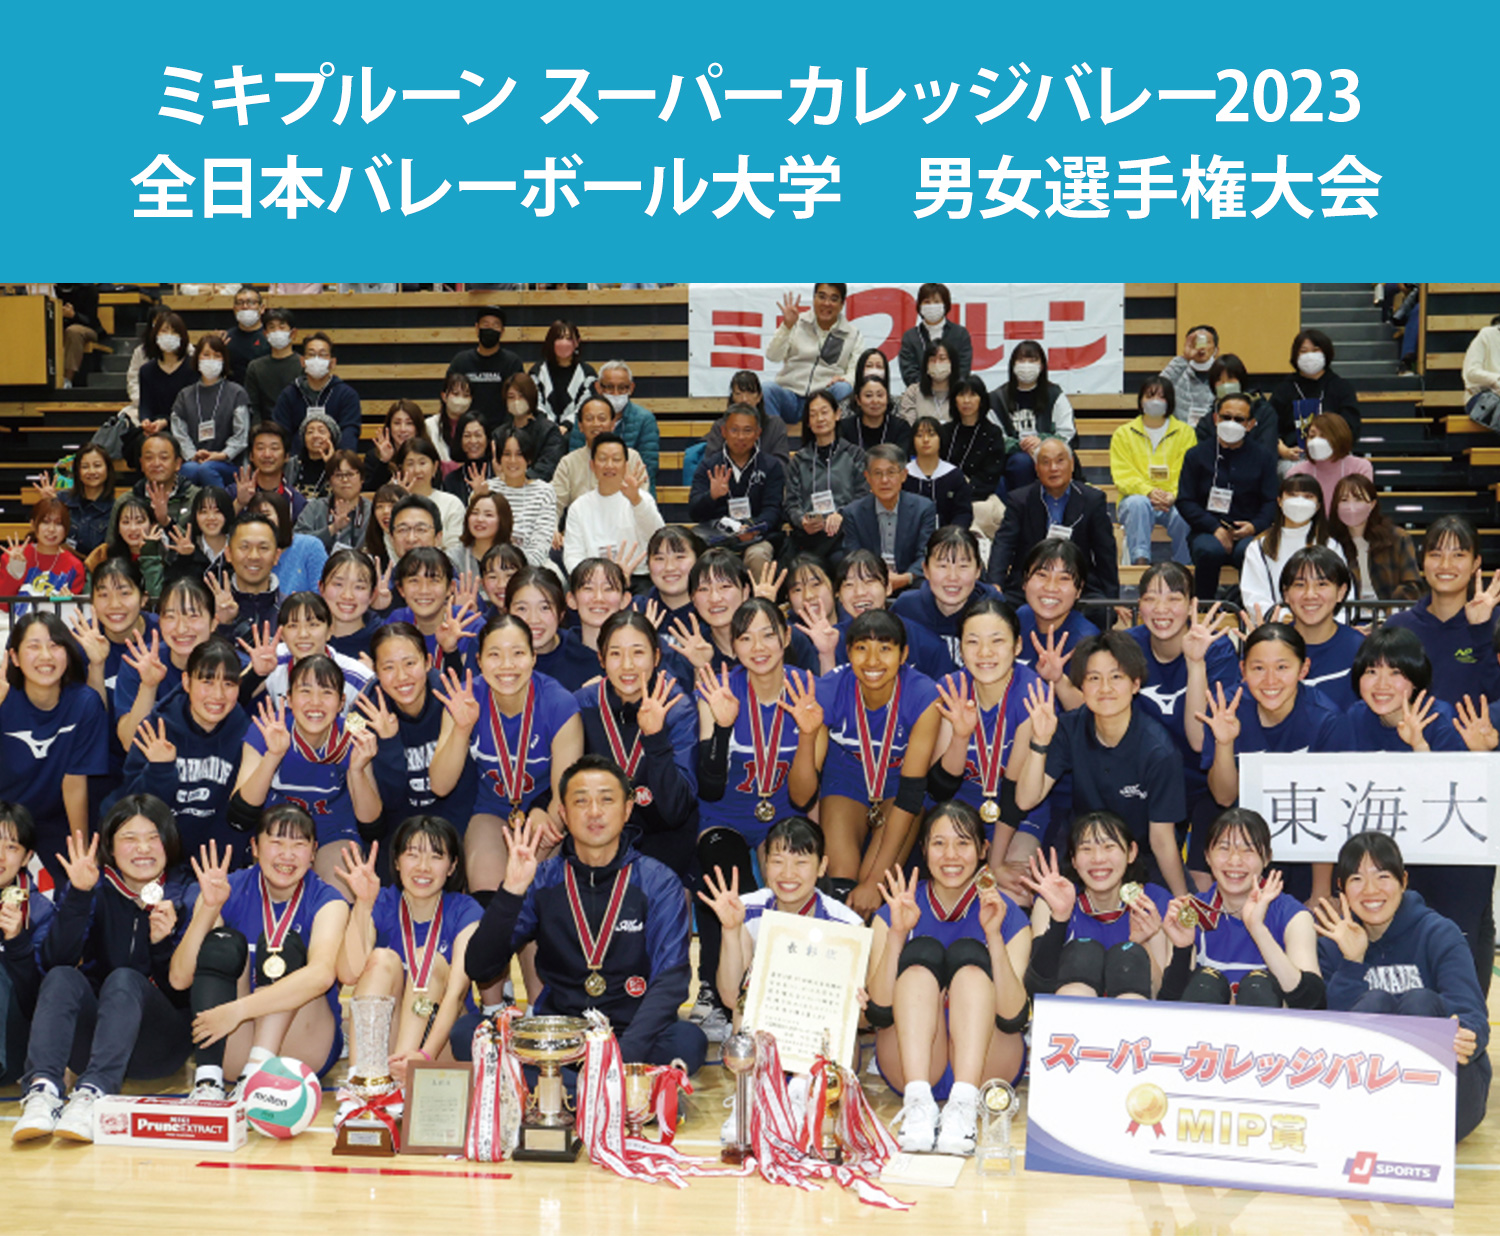 ミキプルーン スーパーカレッジバレー2021 全日本バレーボール大学　男女選手権大会